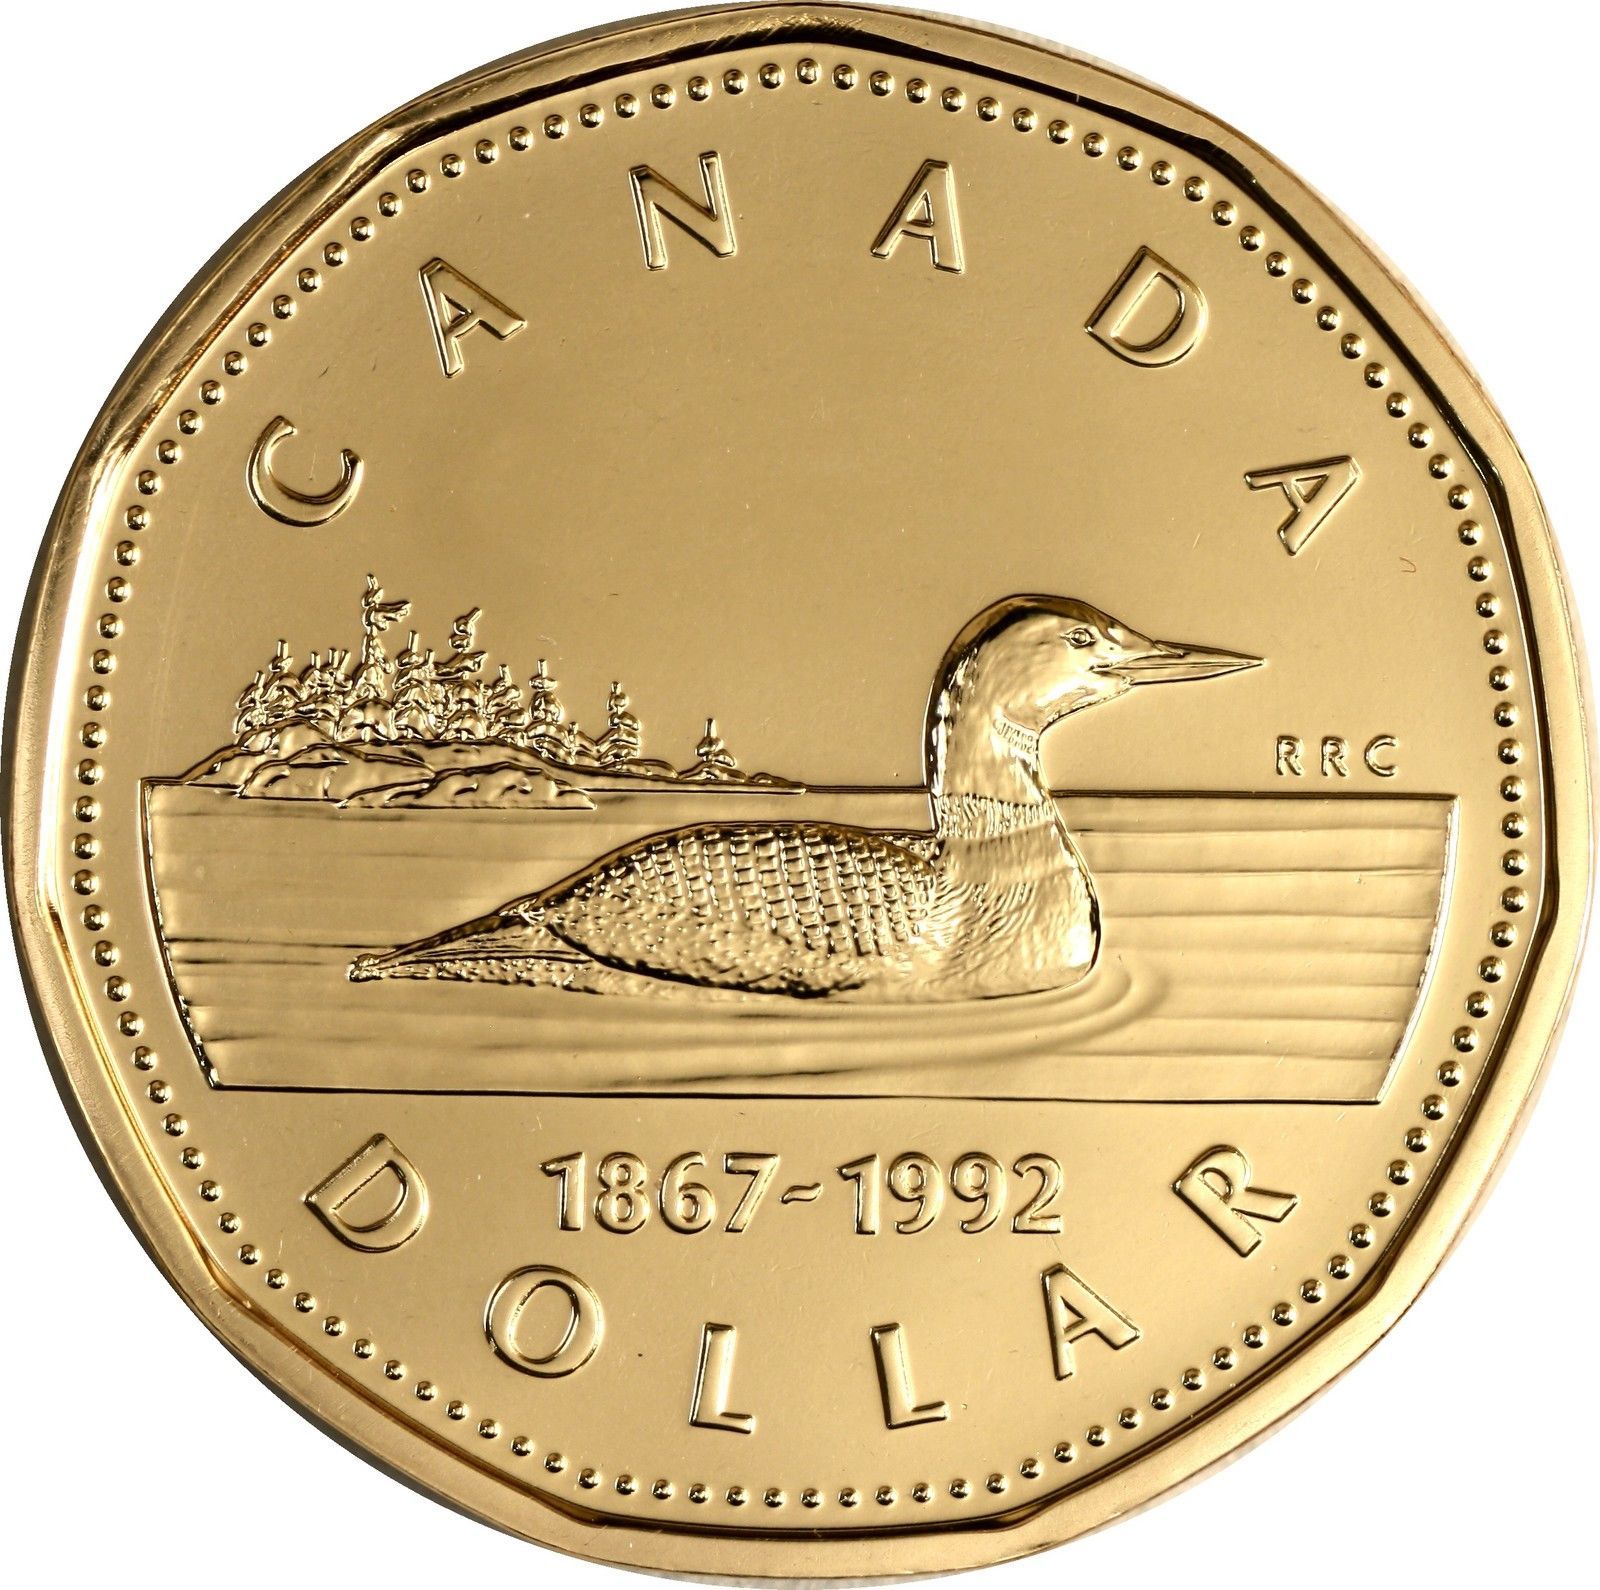 Канада 1. Монета 1 доллар Канада. 1 Канадский доллар монета. Канадский доллар 1867-1992. Канадские юбилейные монеты.